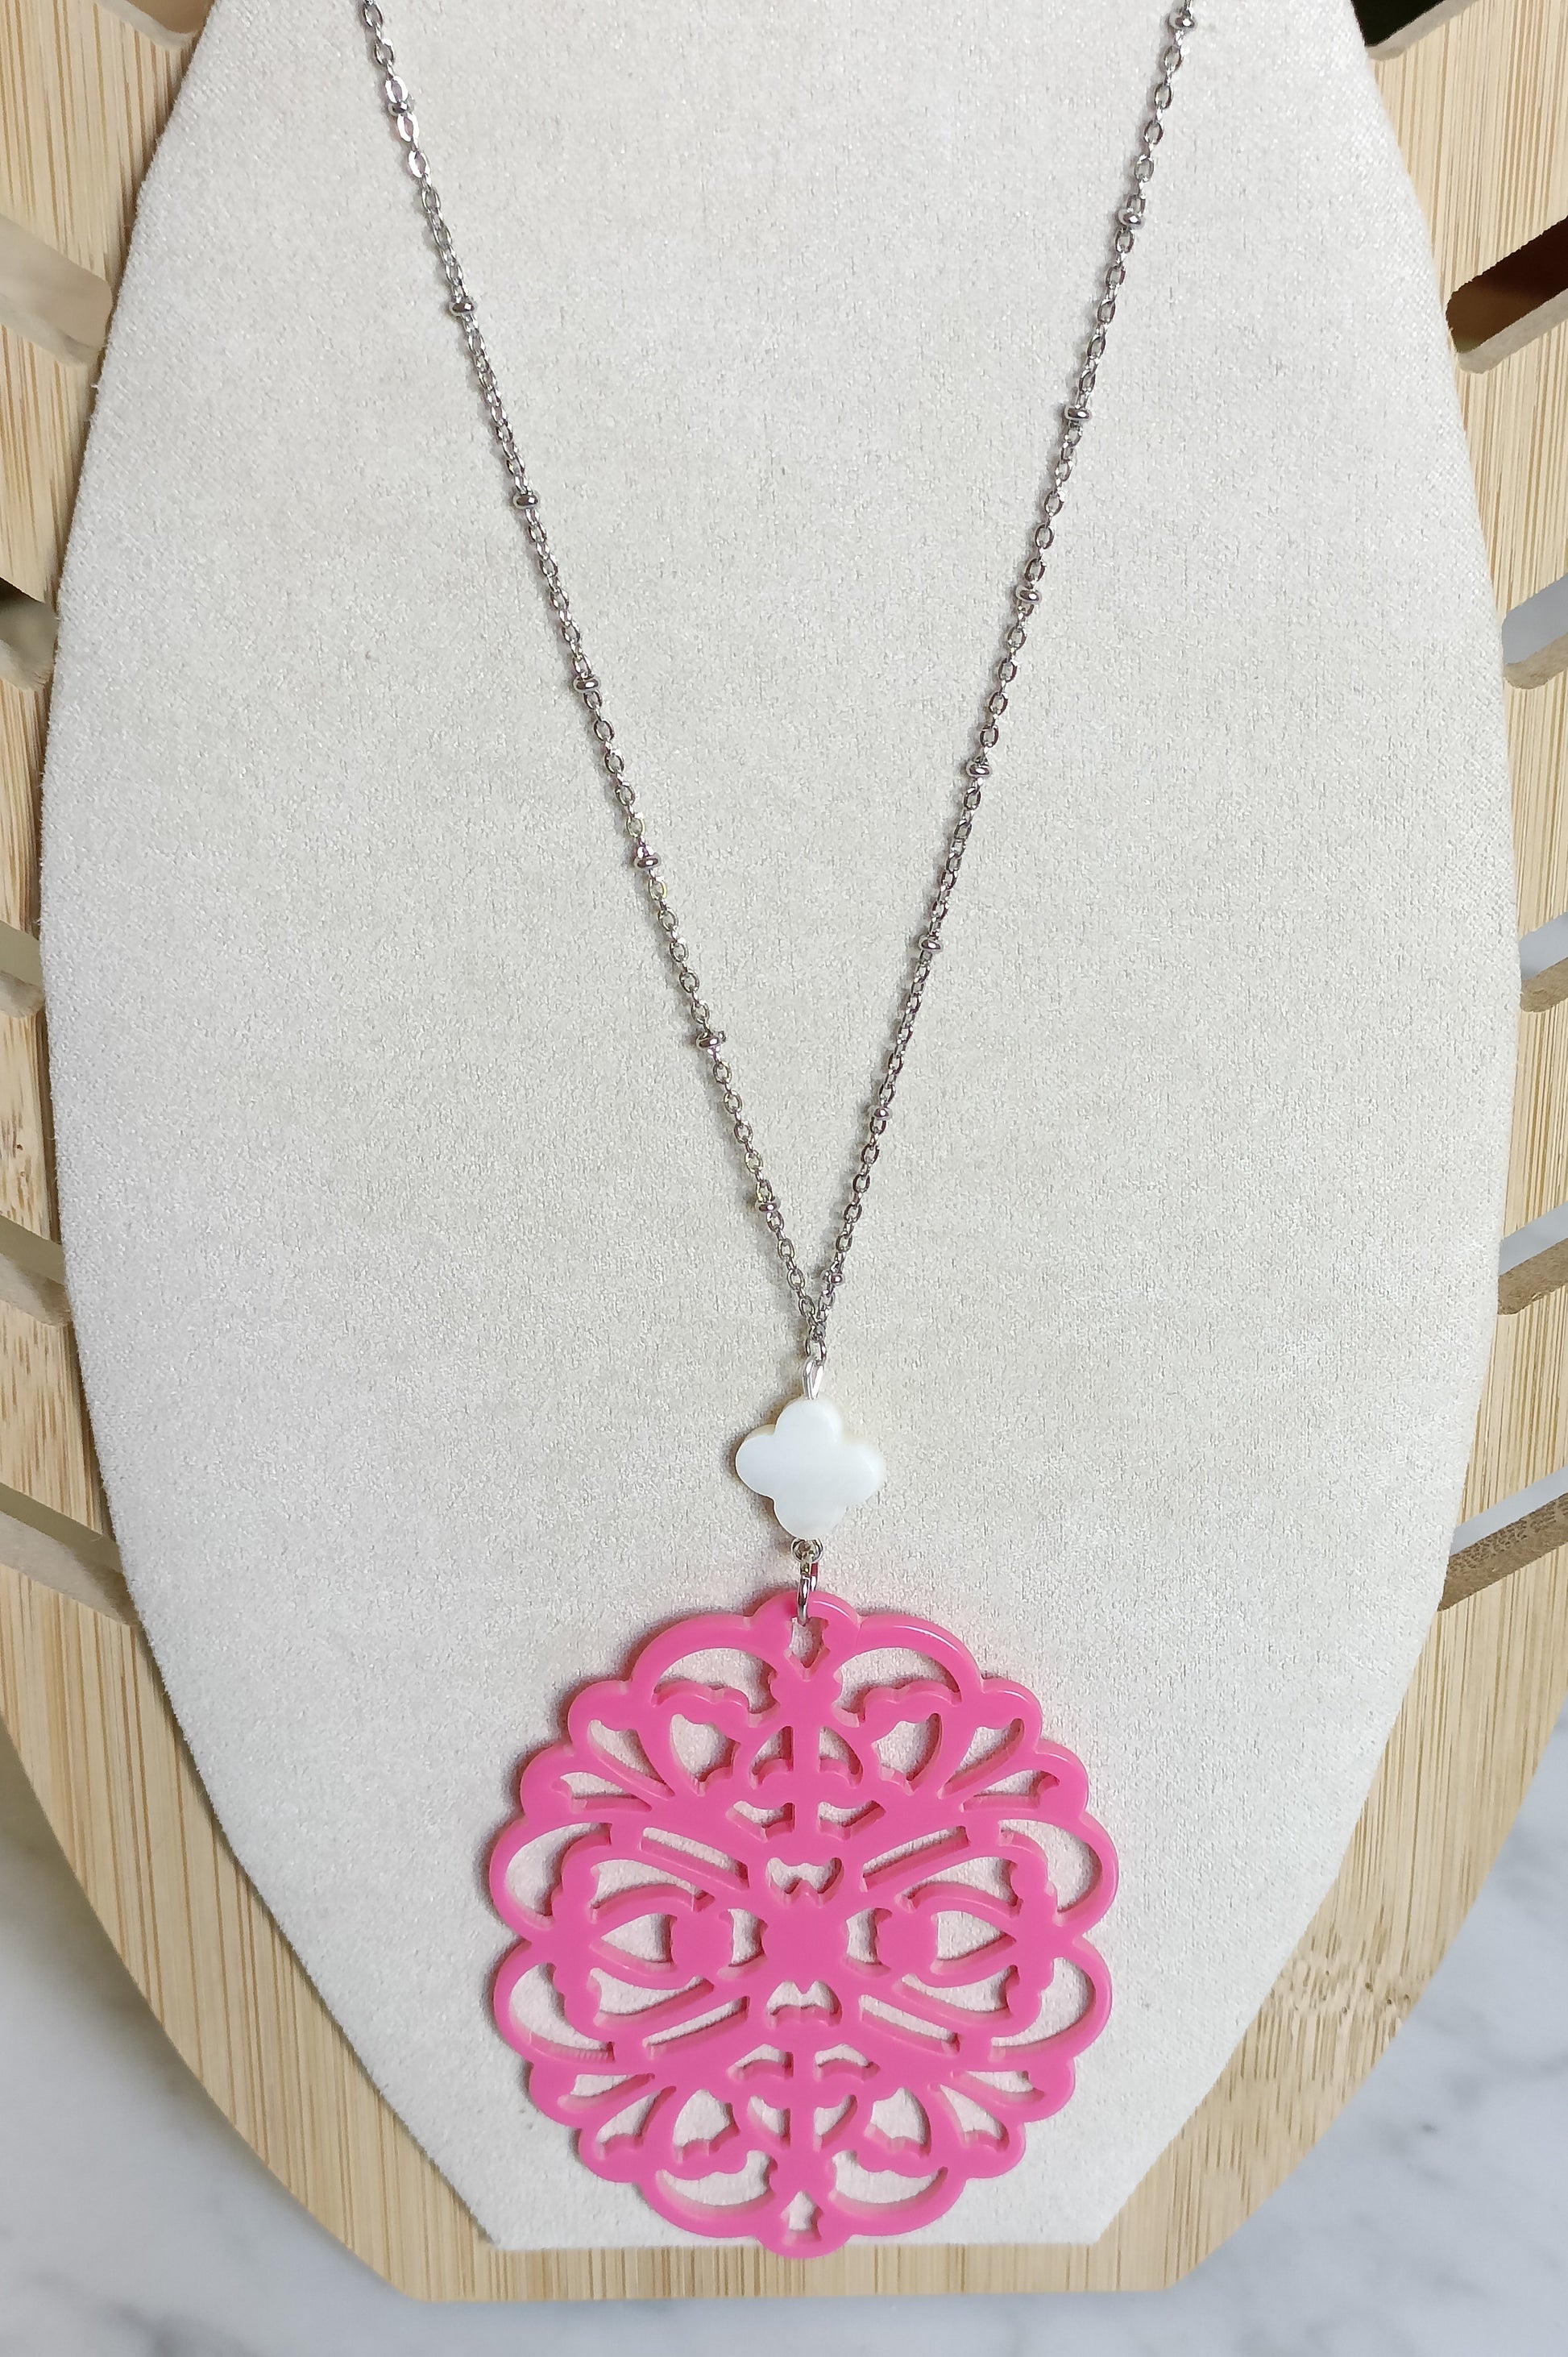 Sautoir argenté en acier inoxydable avec petite nacre fleur blanche et grande estampe rose vif en acrylique    etite nacre blanche et grande estampe rose en acrylique